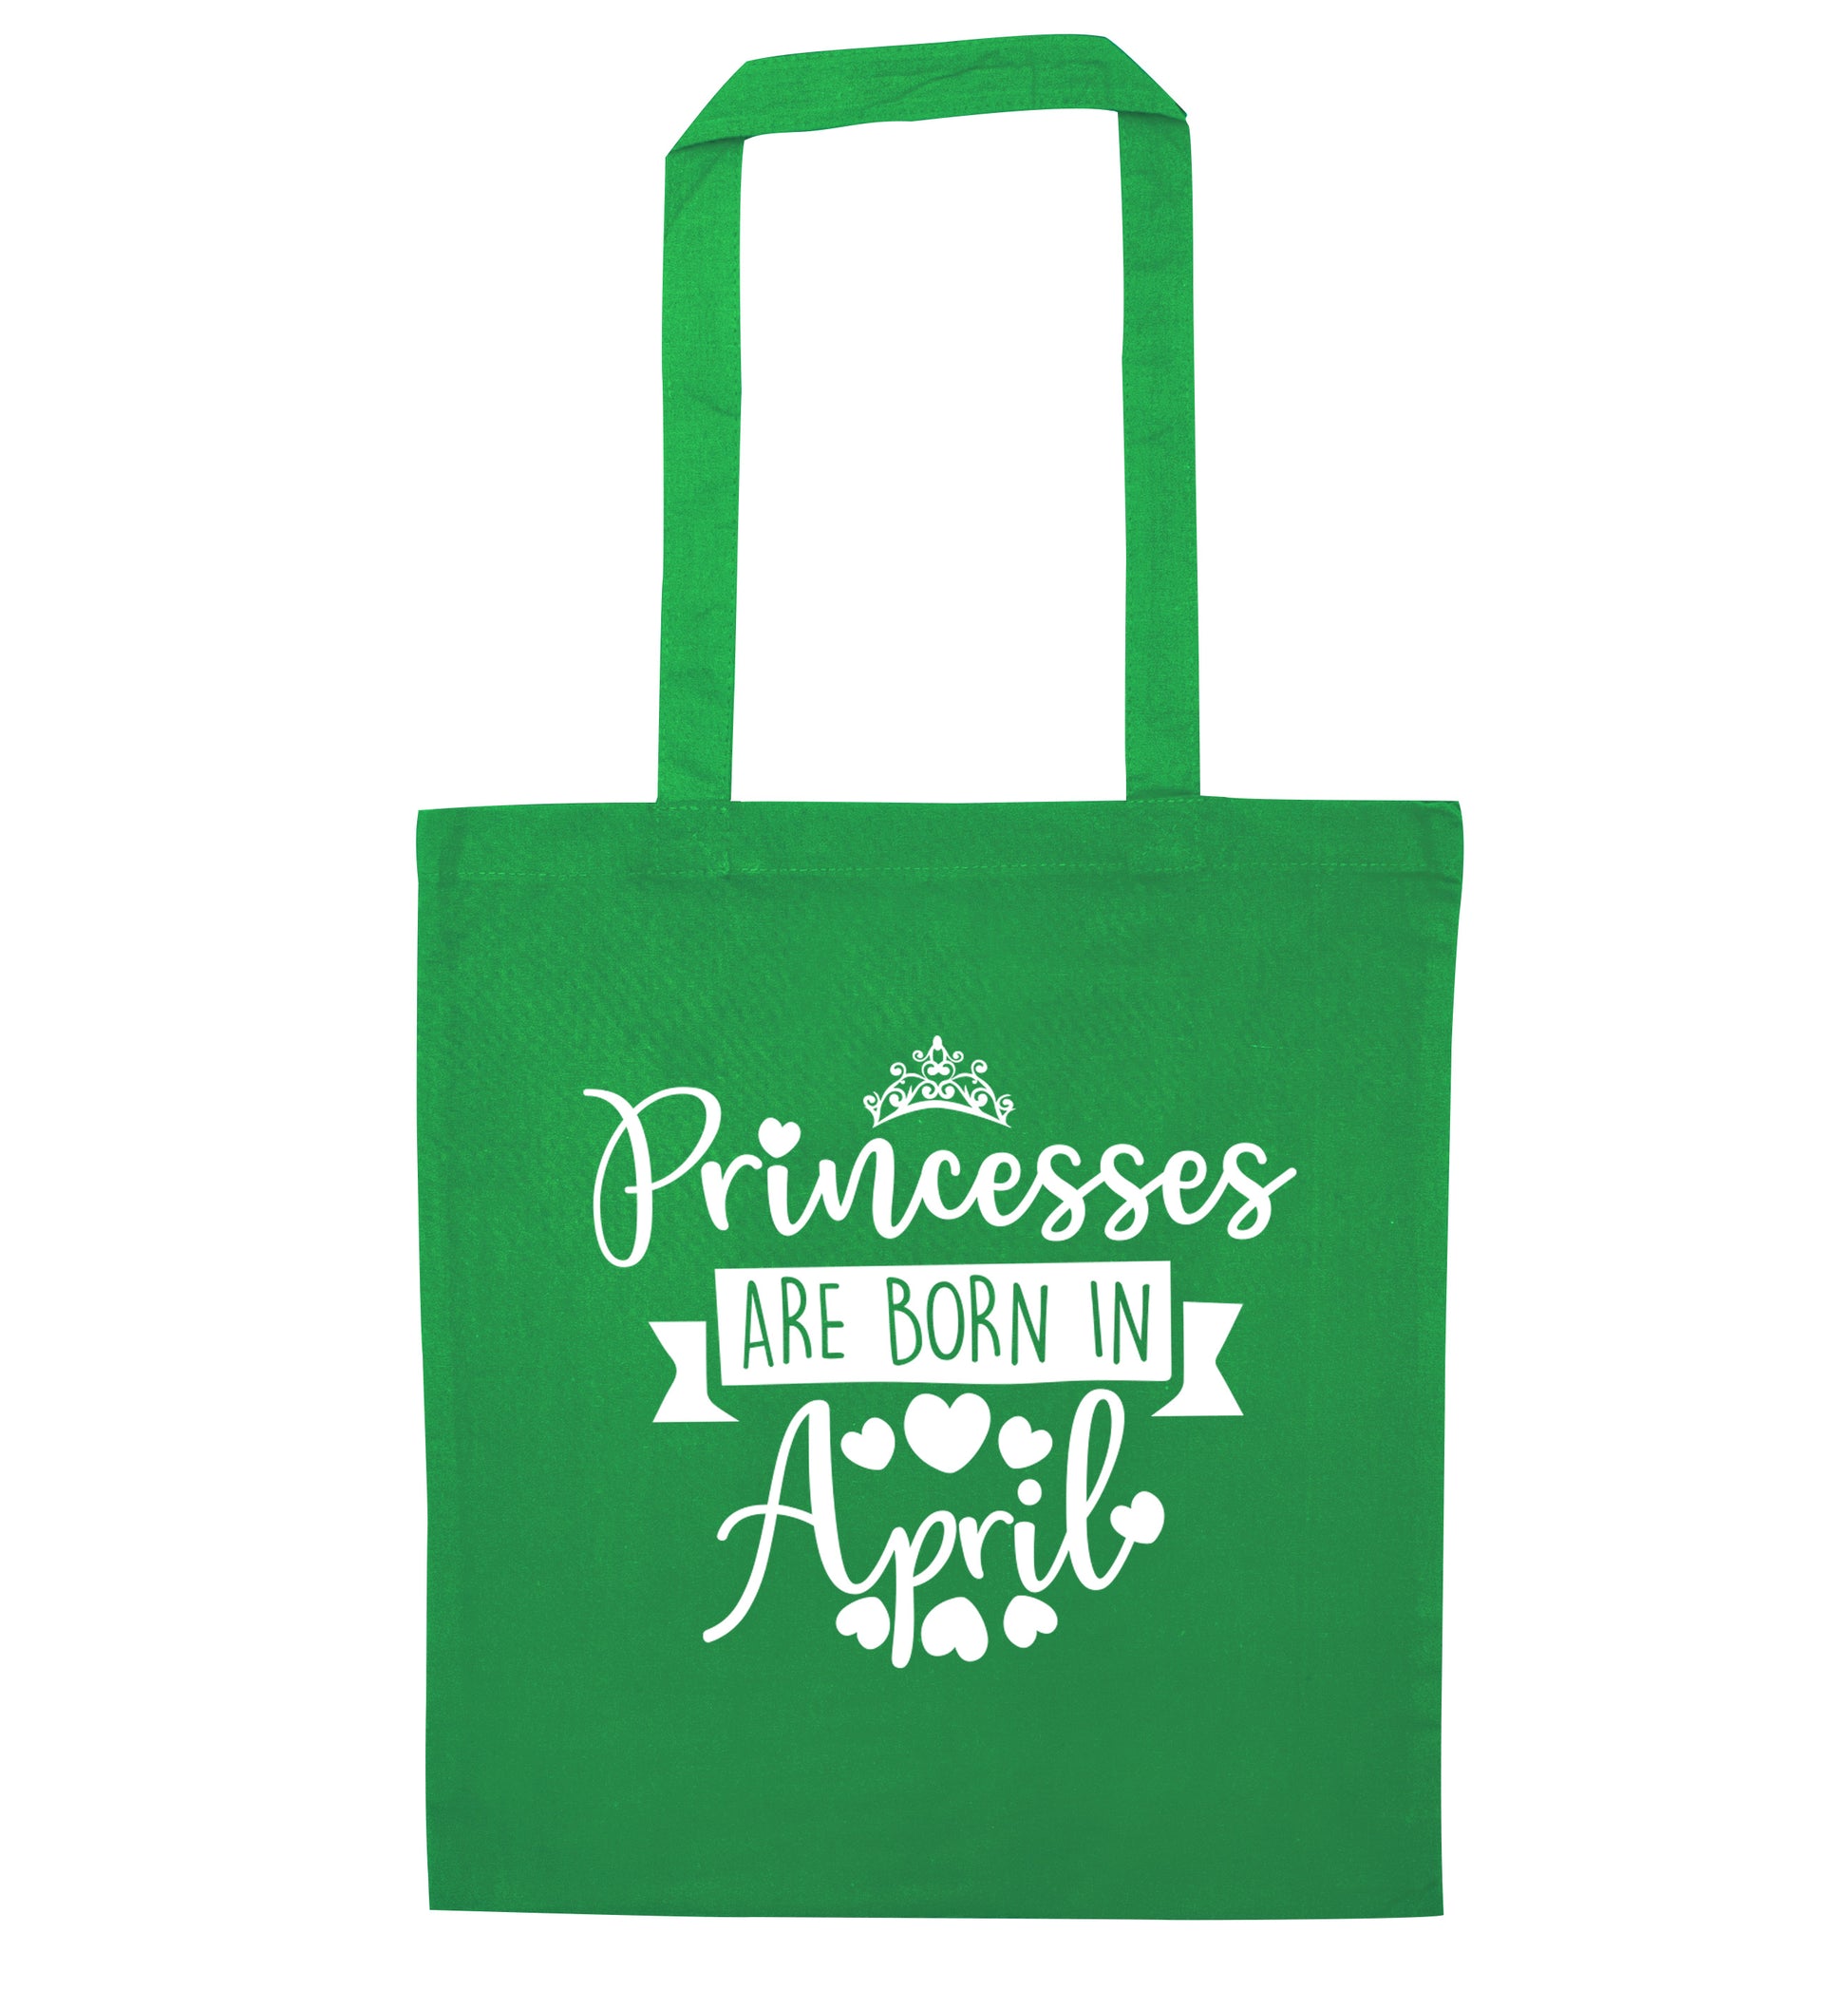 Princesses are born in April green tote bag